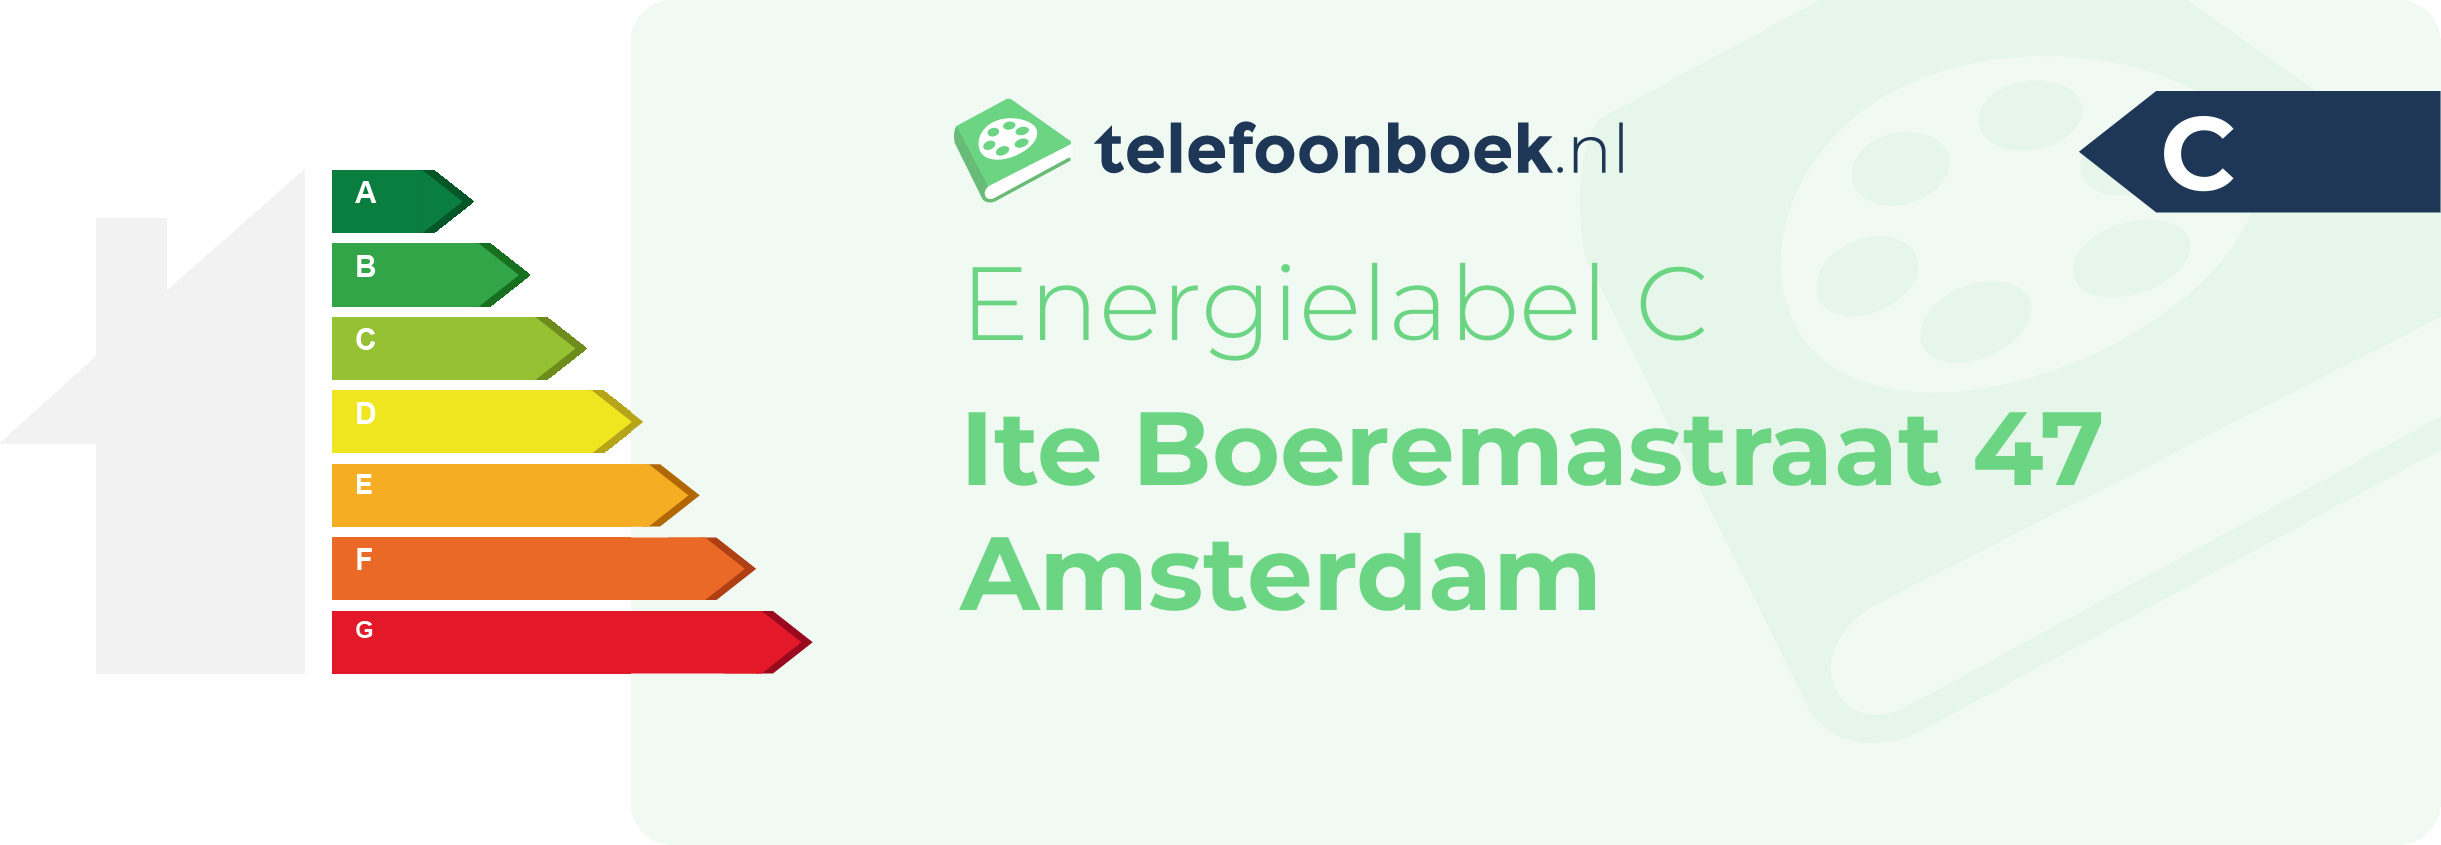 Energielabel Ite Boeremastraat 47 Amsterdam